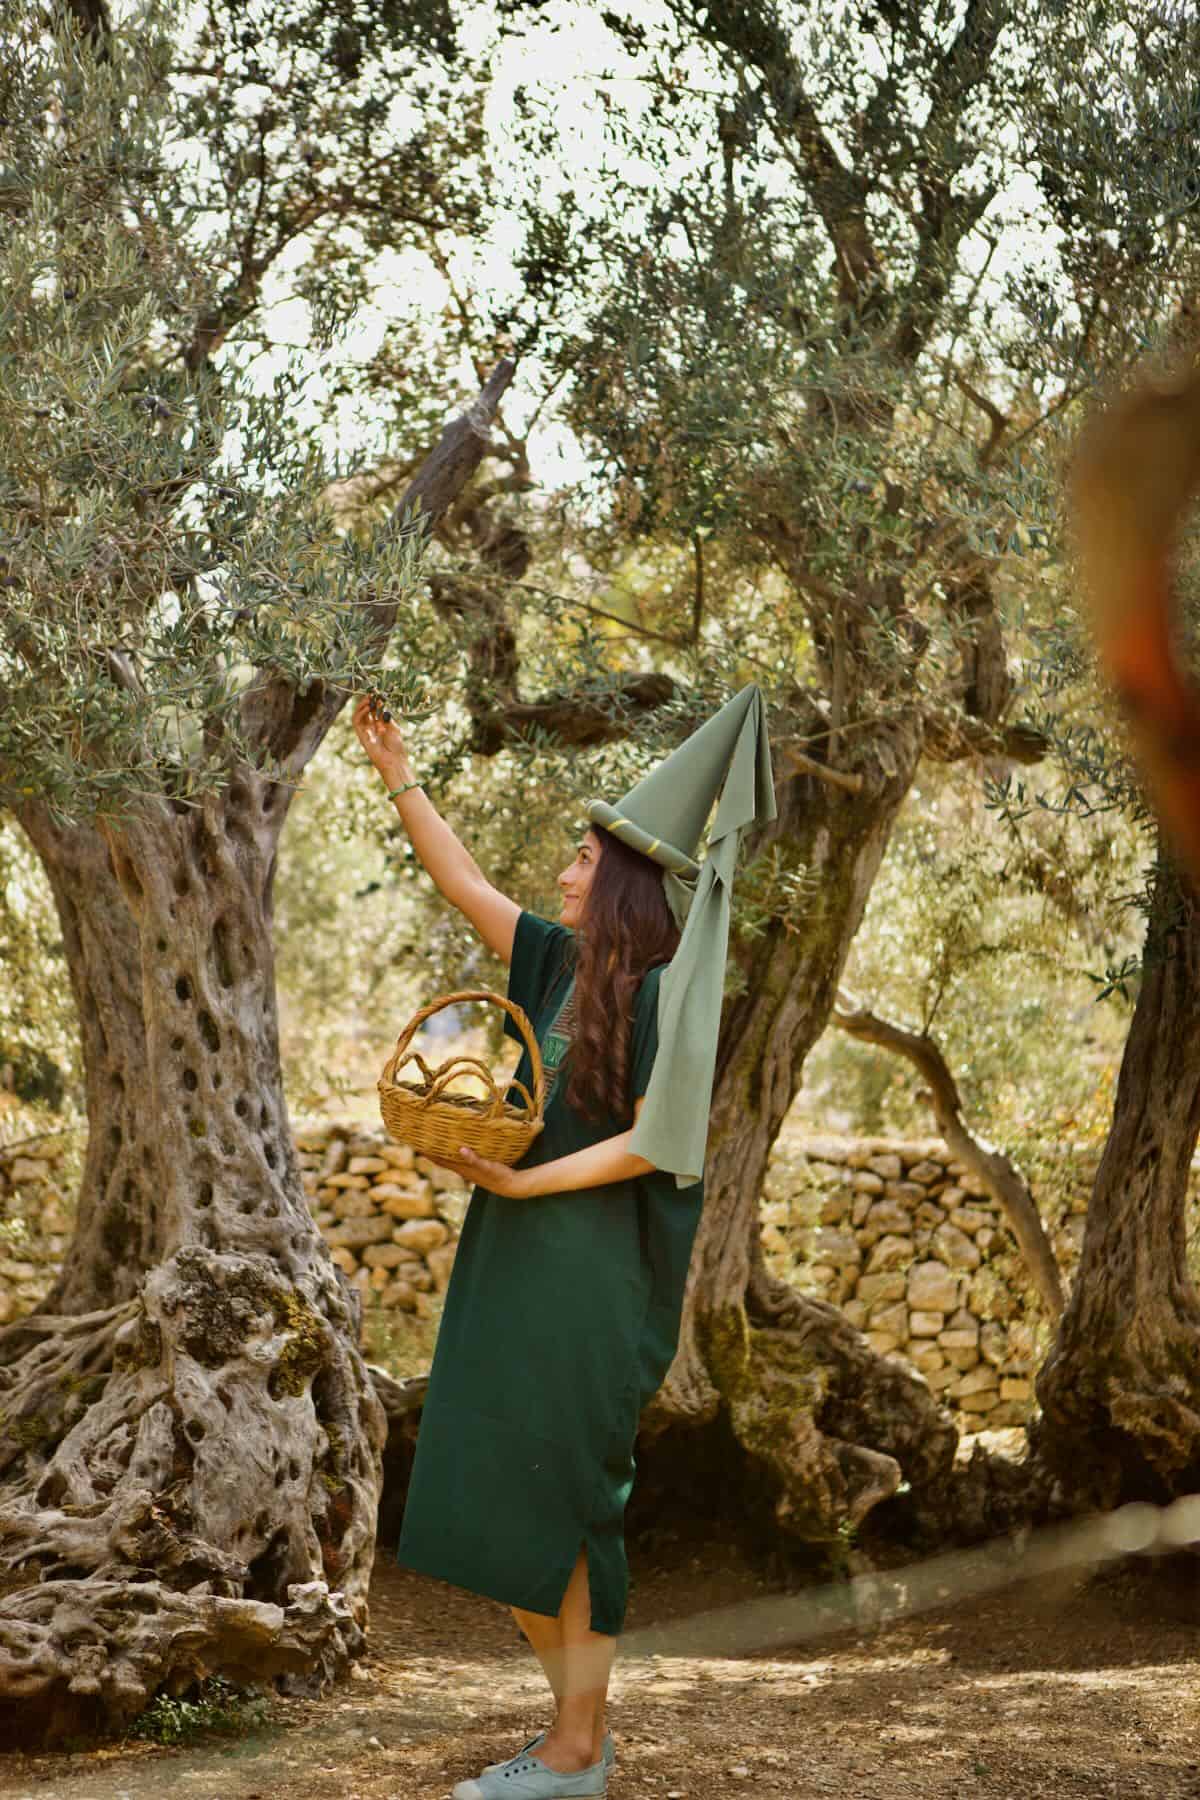 Samira picking olives